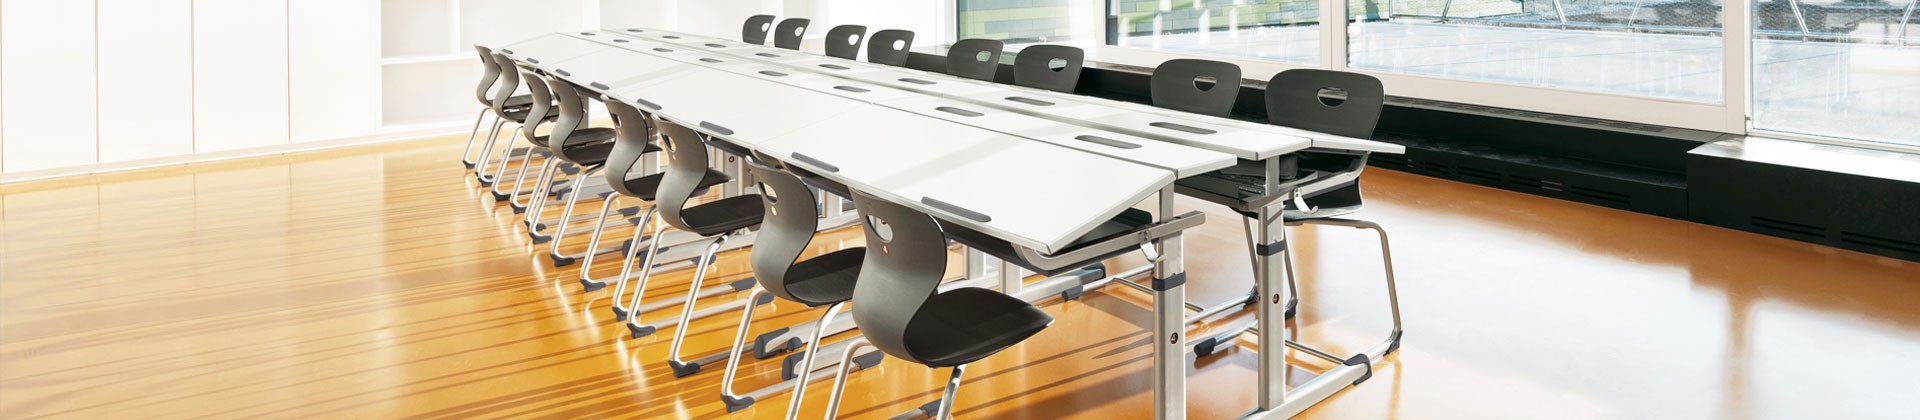 BBG Tische und Sessel für den allgemeinen Unterricht